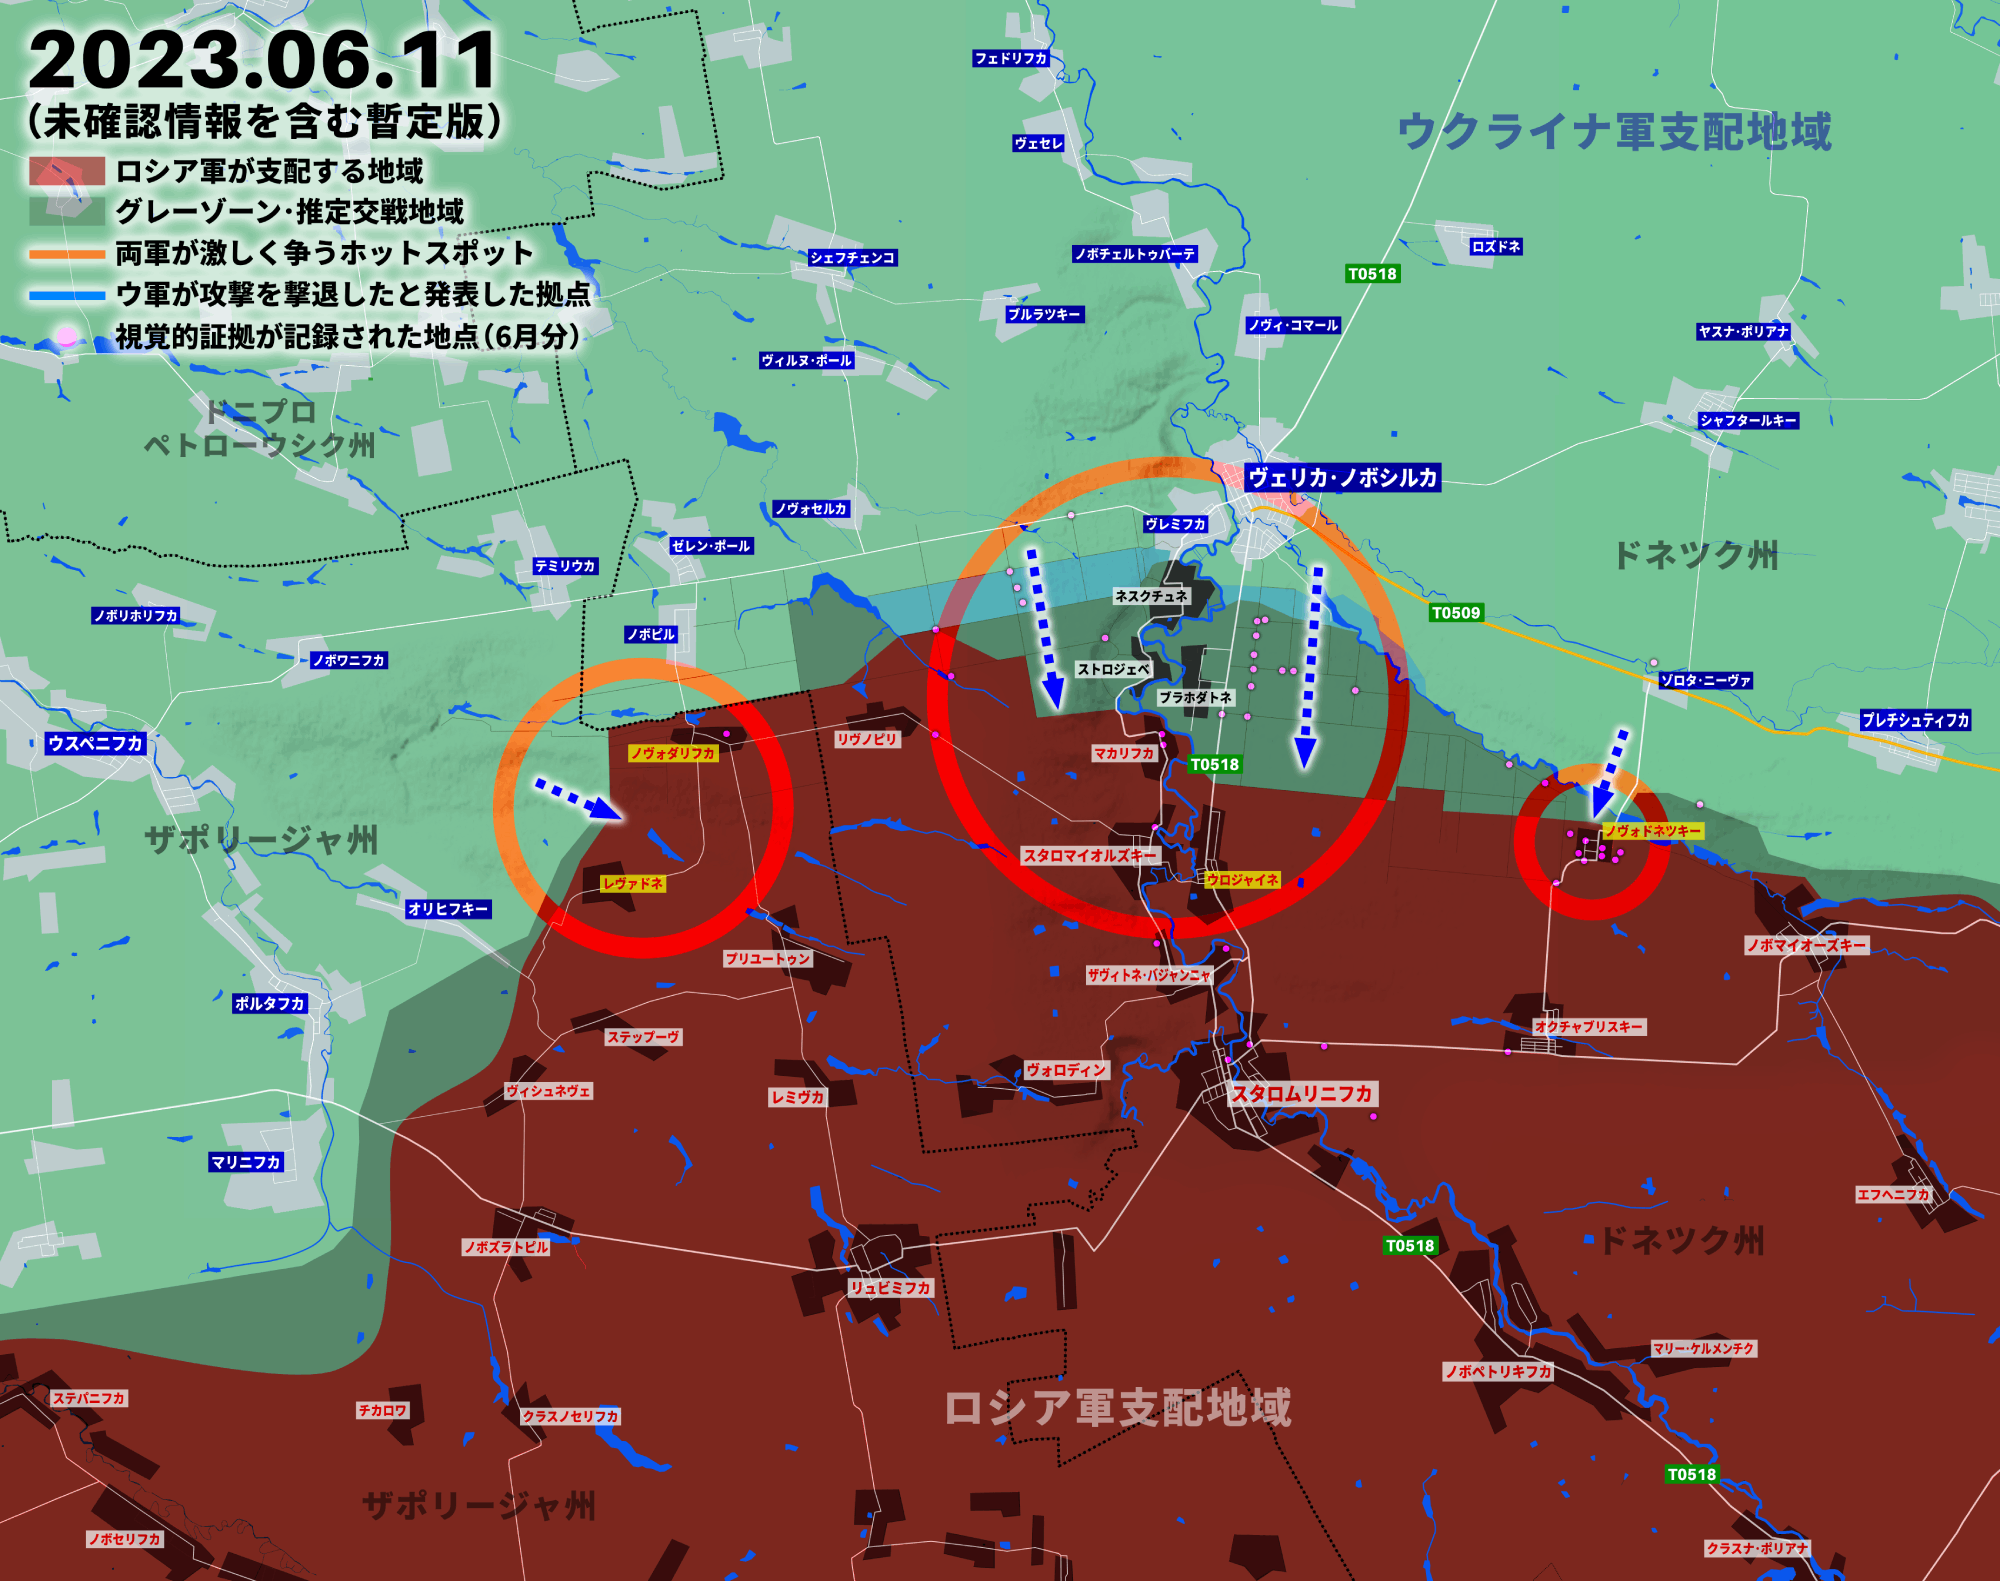 南ドネツクの戦い、ウクライナ軍が攻撃を再開して約4kmほど前進か